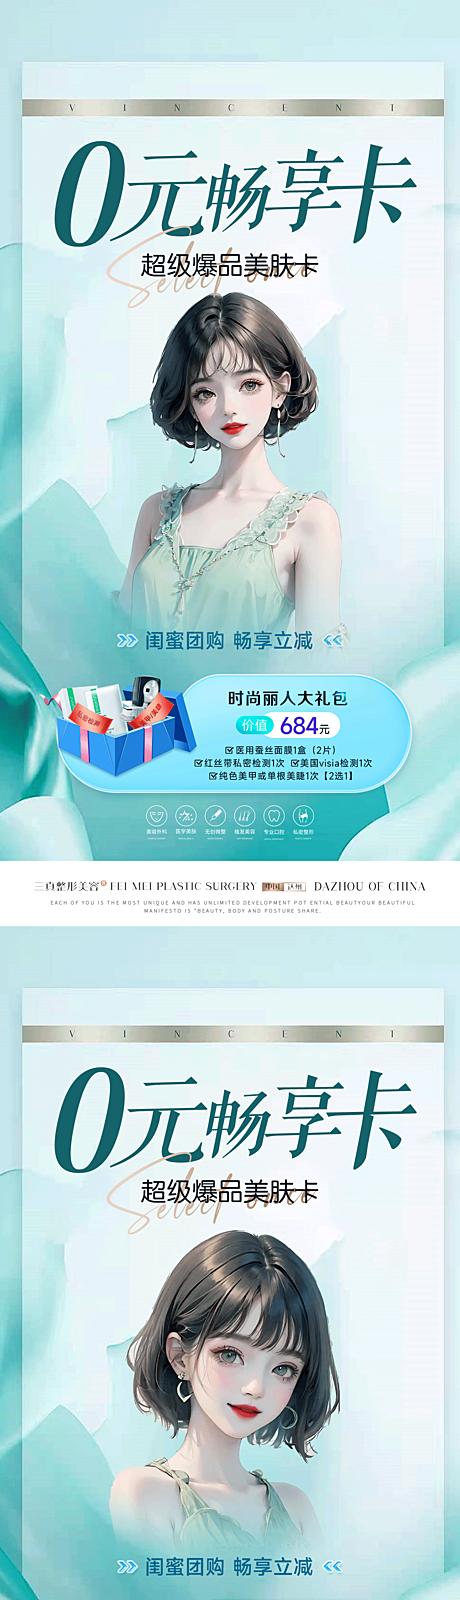 仙图网-医美0元卡项目海报